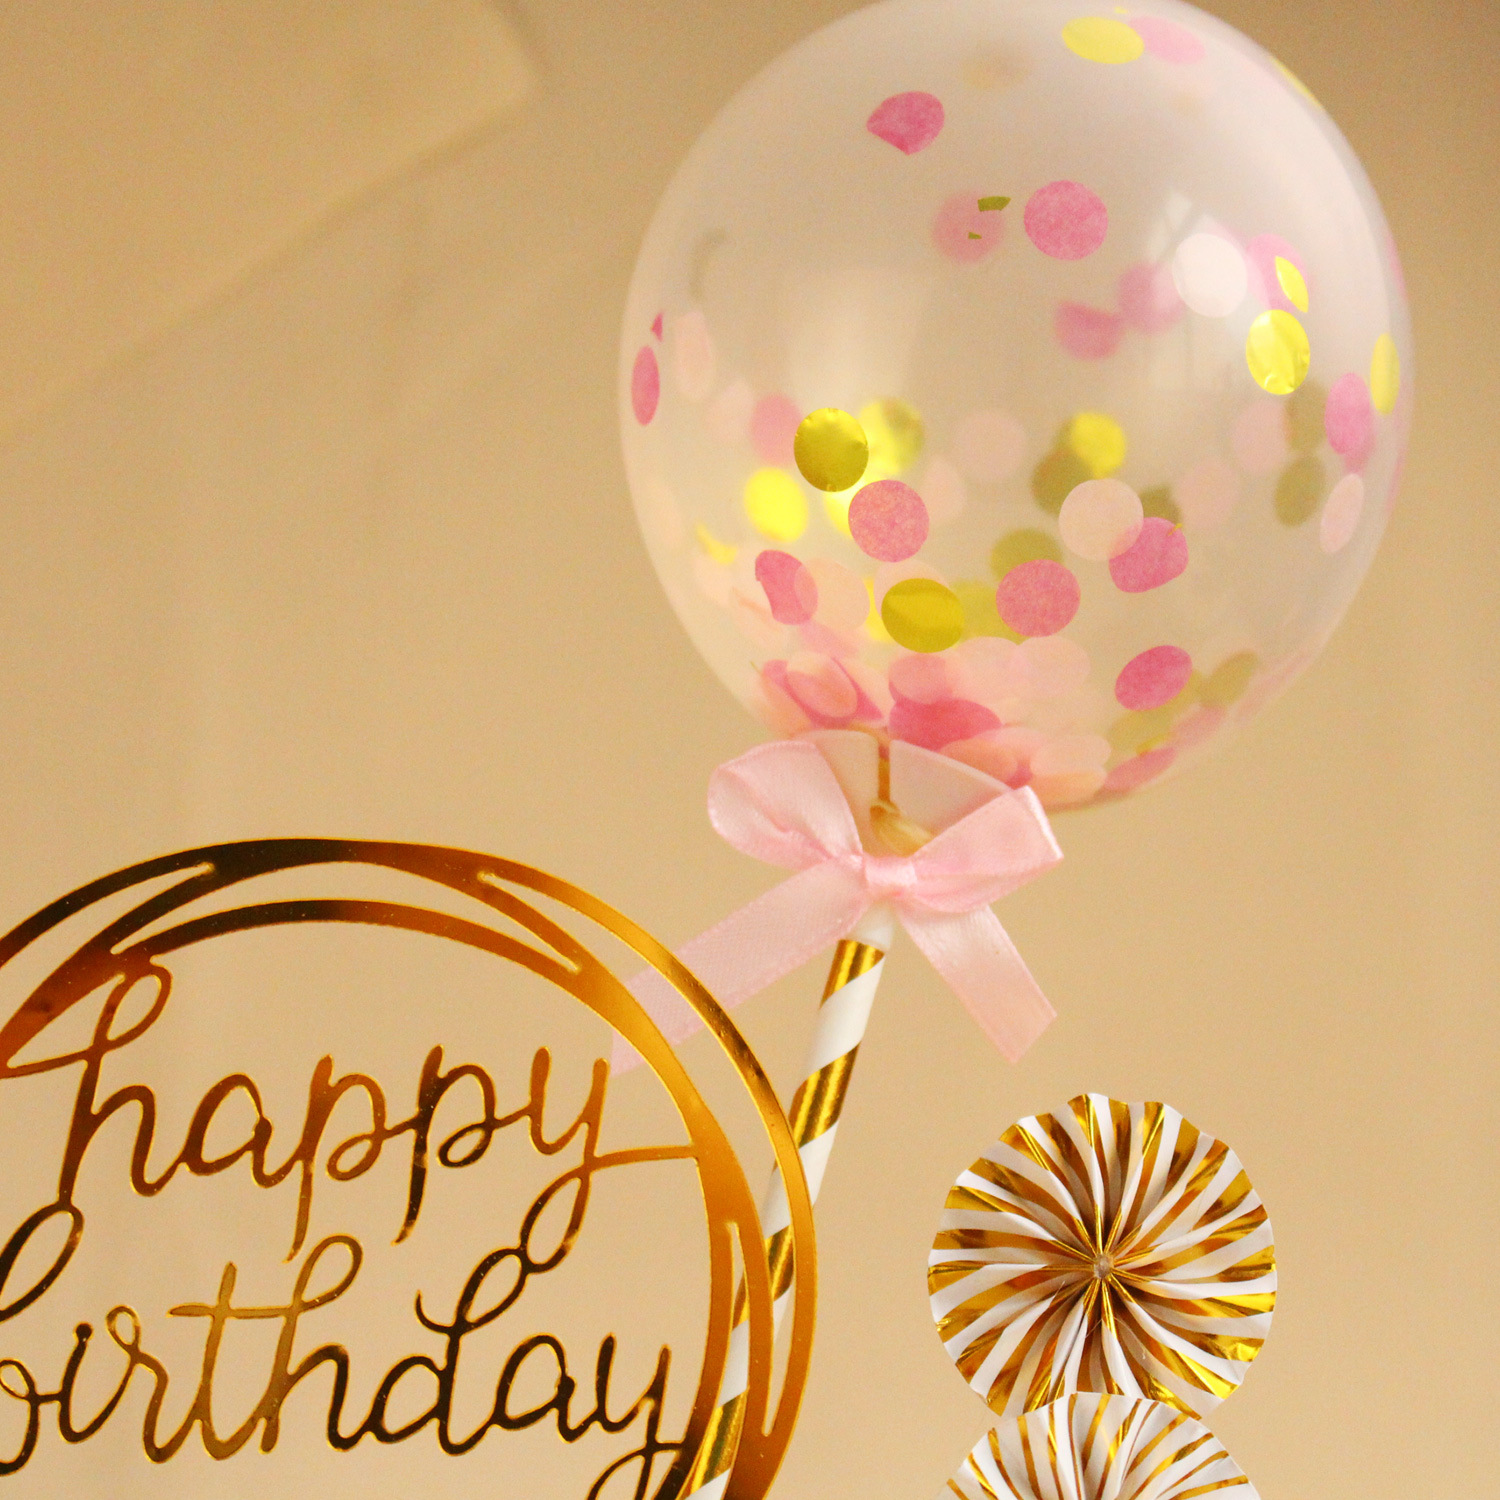 亚马逊 烘焙蛋糕装饰套装 生日蜡烛纸扇气球生日快乐插件插牌套装详情图2